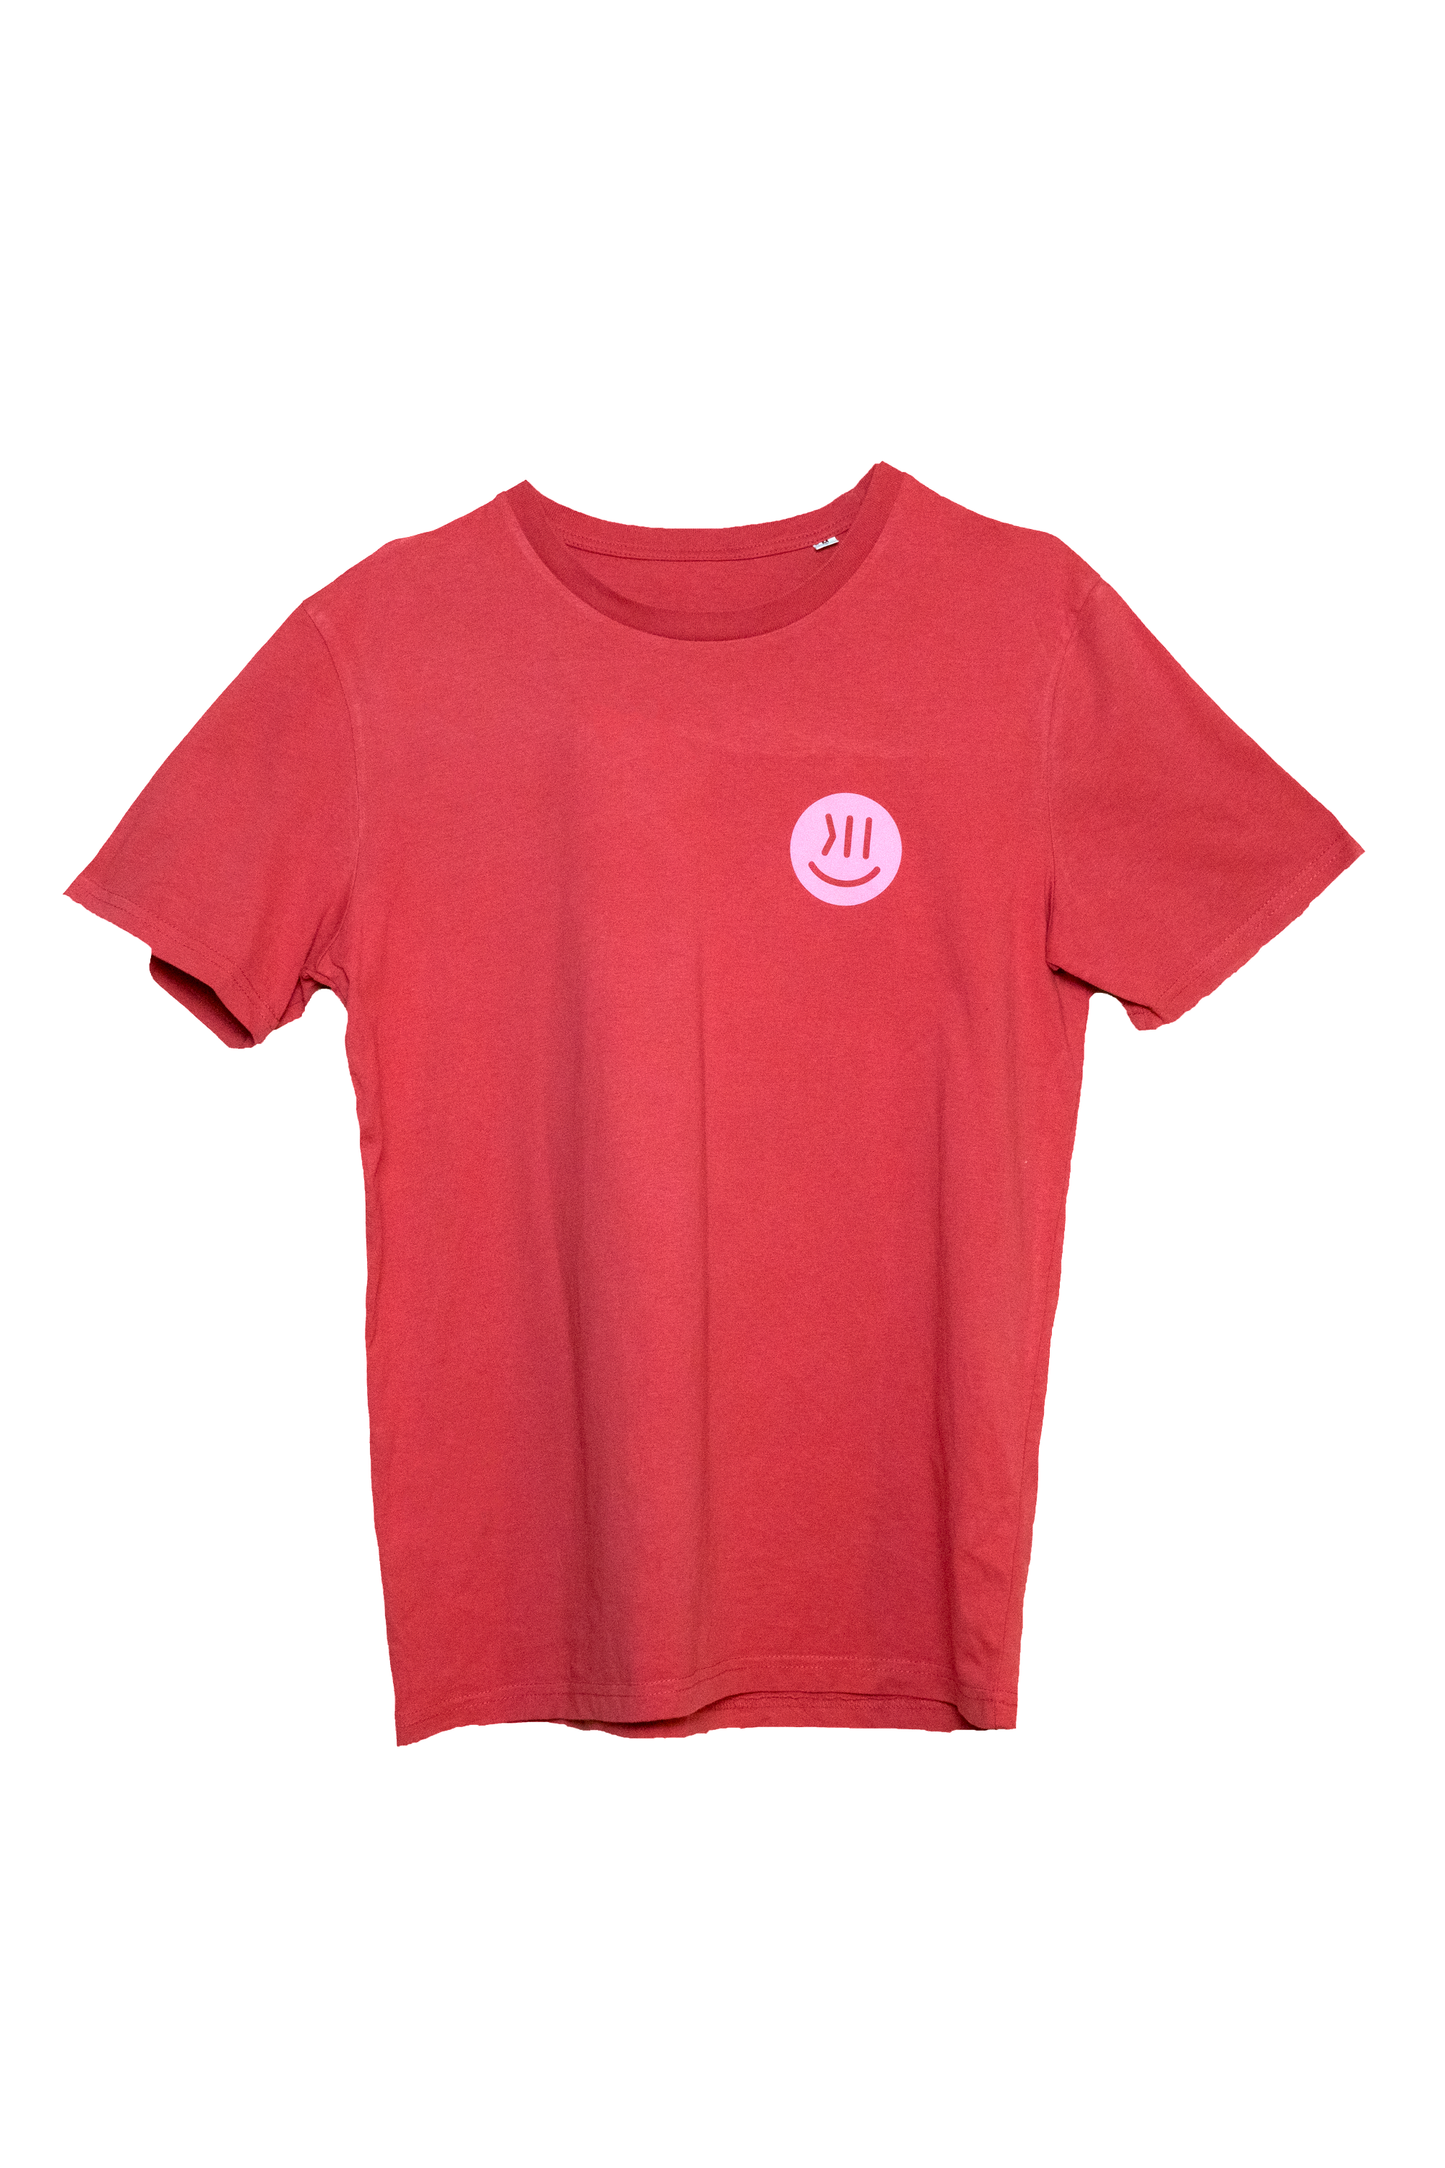 Das T-Shirt mit dem Namen Maxi für Erwachsene. Es ist in der Farbe Carmine Red. Hier ist es vor weißem Hintergrund zu sehen. Auf der Brust ist der isociety Smiley in rosa zu erkennen. 